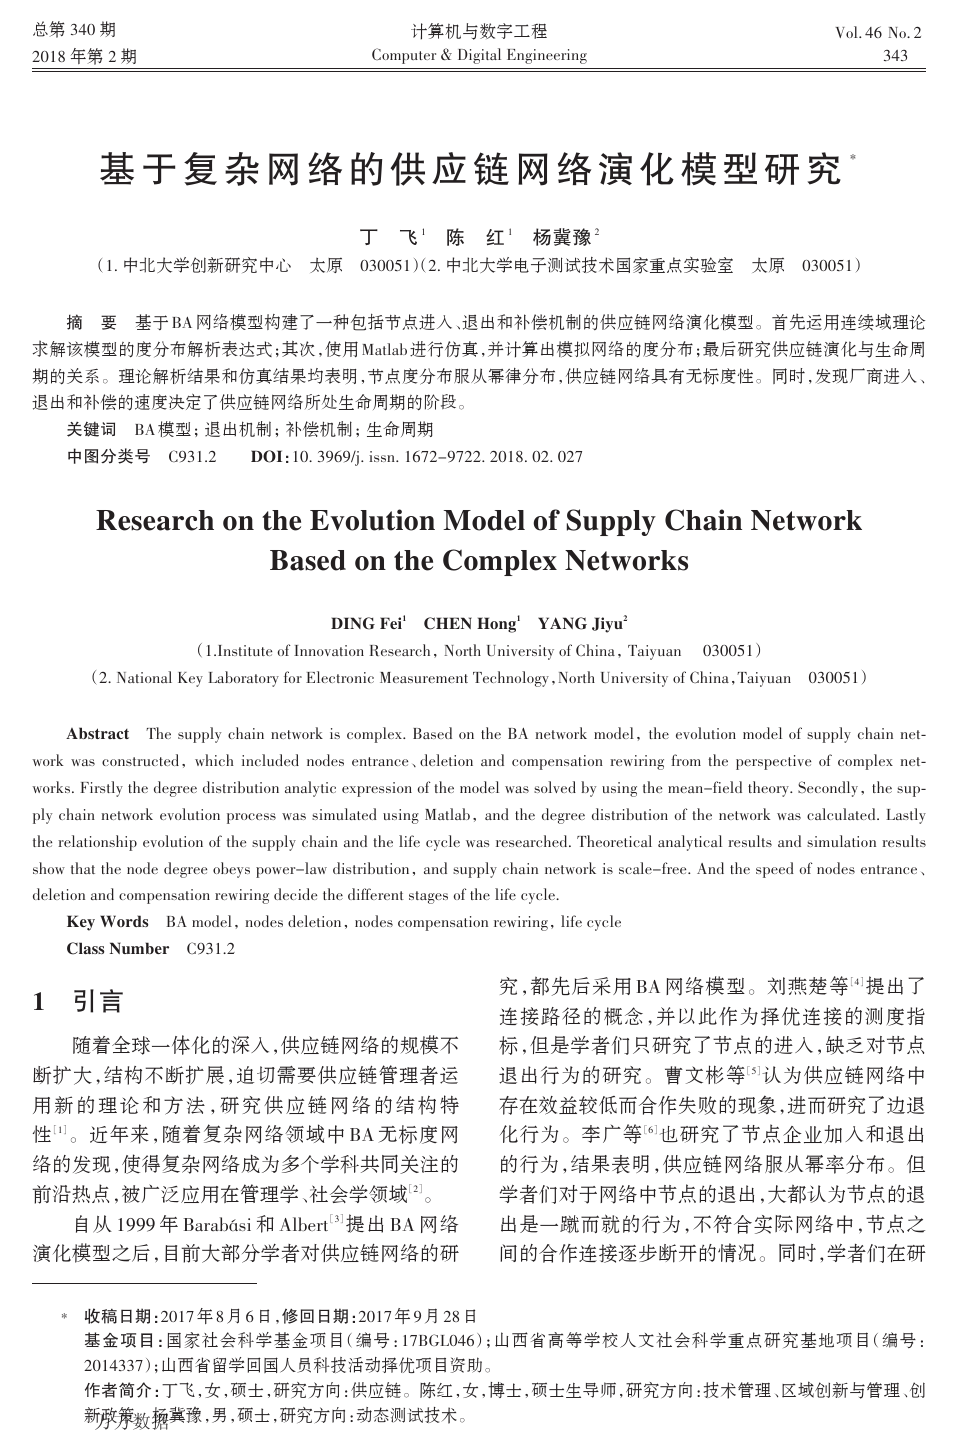 基于复杂网络的供应链网络演化模型研究